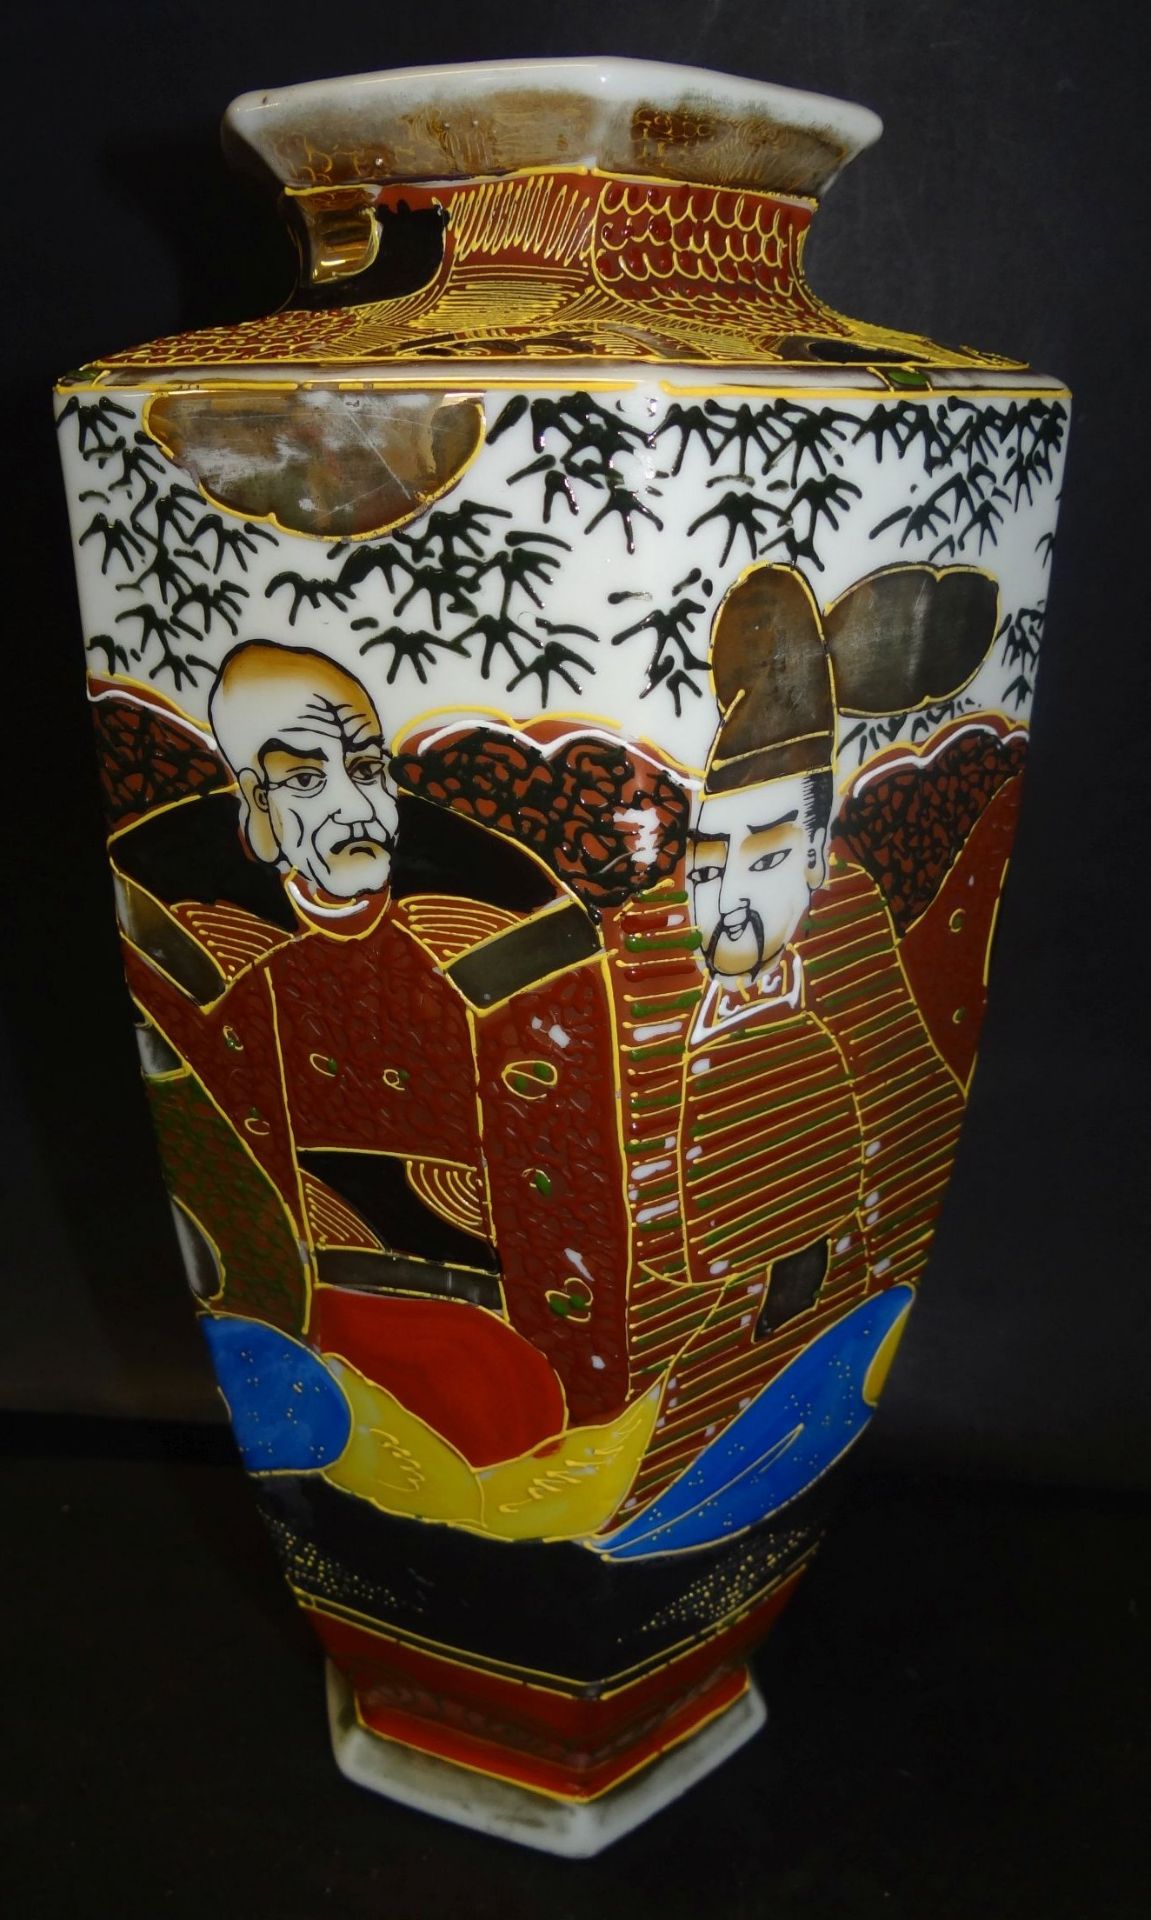 hohe Satsuma-Vase, Japan, Abb. div. Samurai, um 1920, H-31 cm